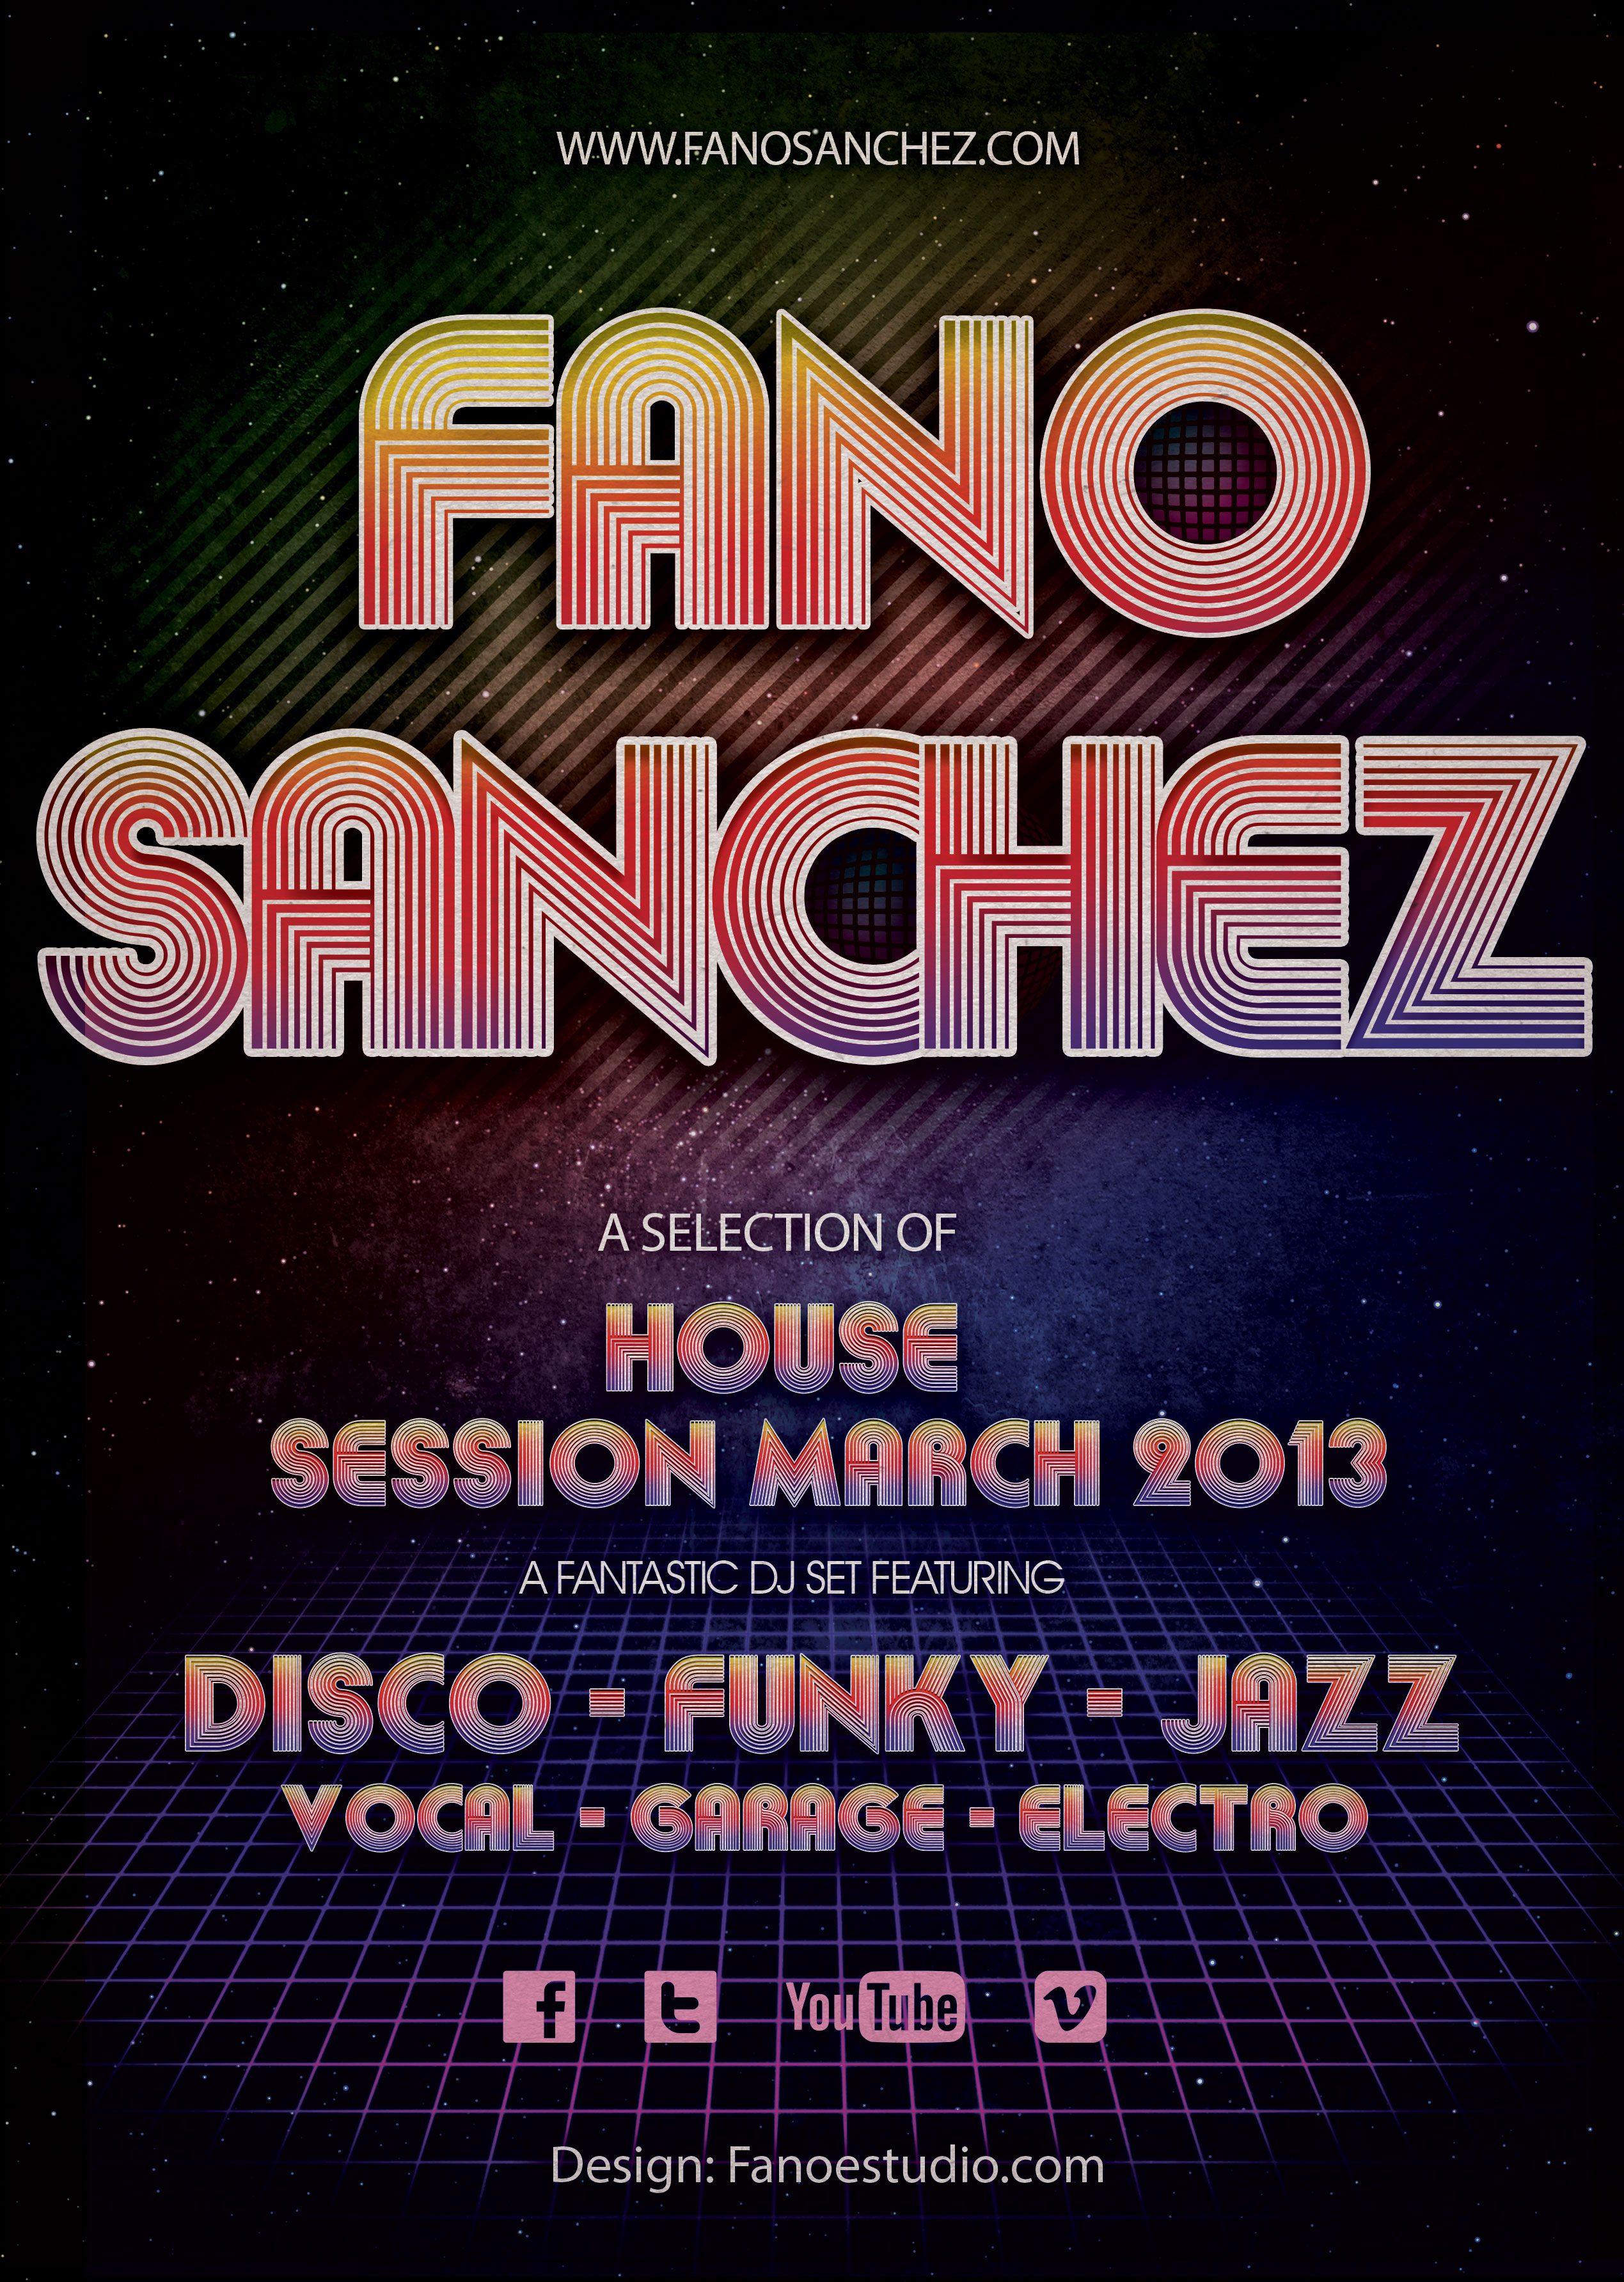 Fano Sanchez Session March 2013